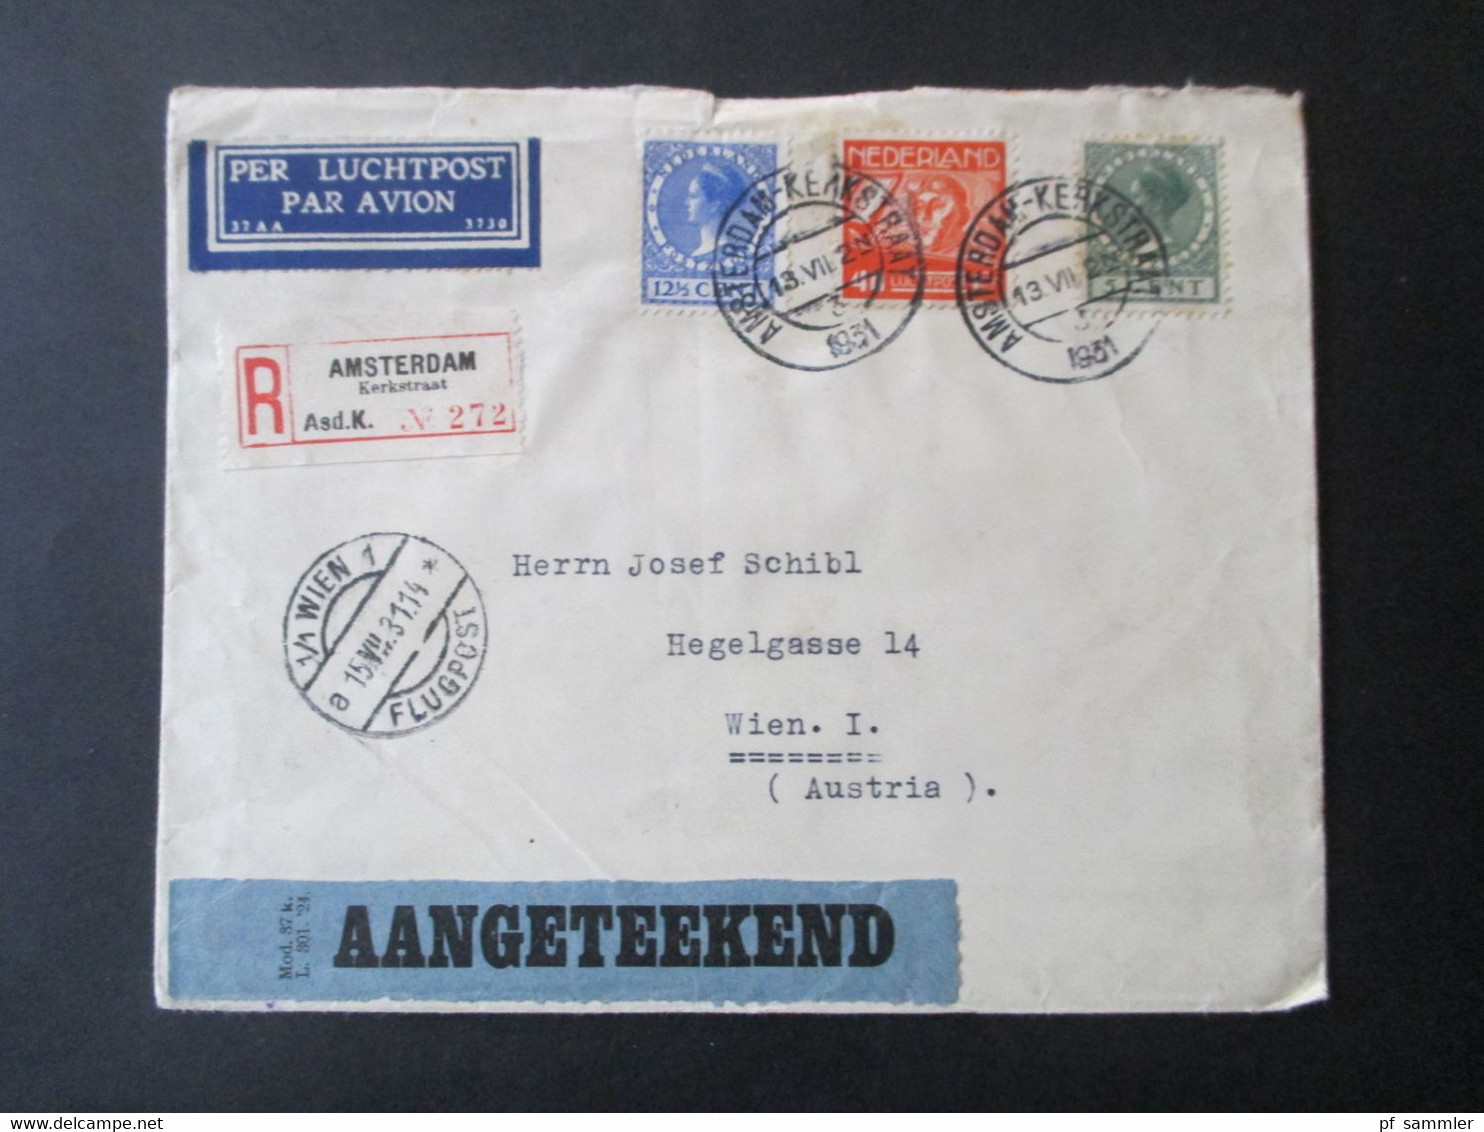 Niederlande 1931 Einschreiben Luftpost Amsterdam Kerkstraat - Wien Rücks. Aufkleber K.L.M. Royal Dutch Air Lines Holland - Briefe U. Dokumente